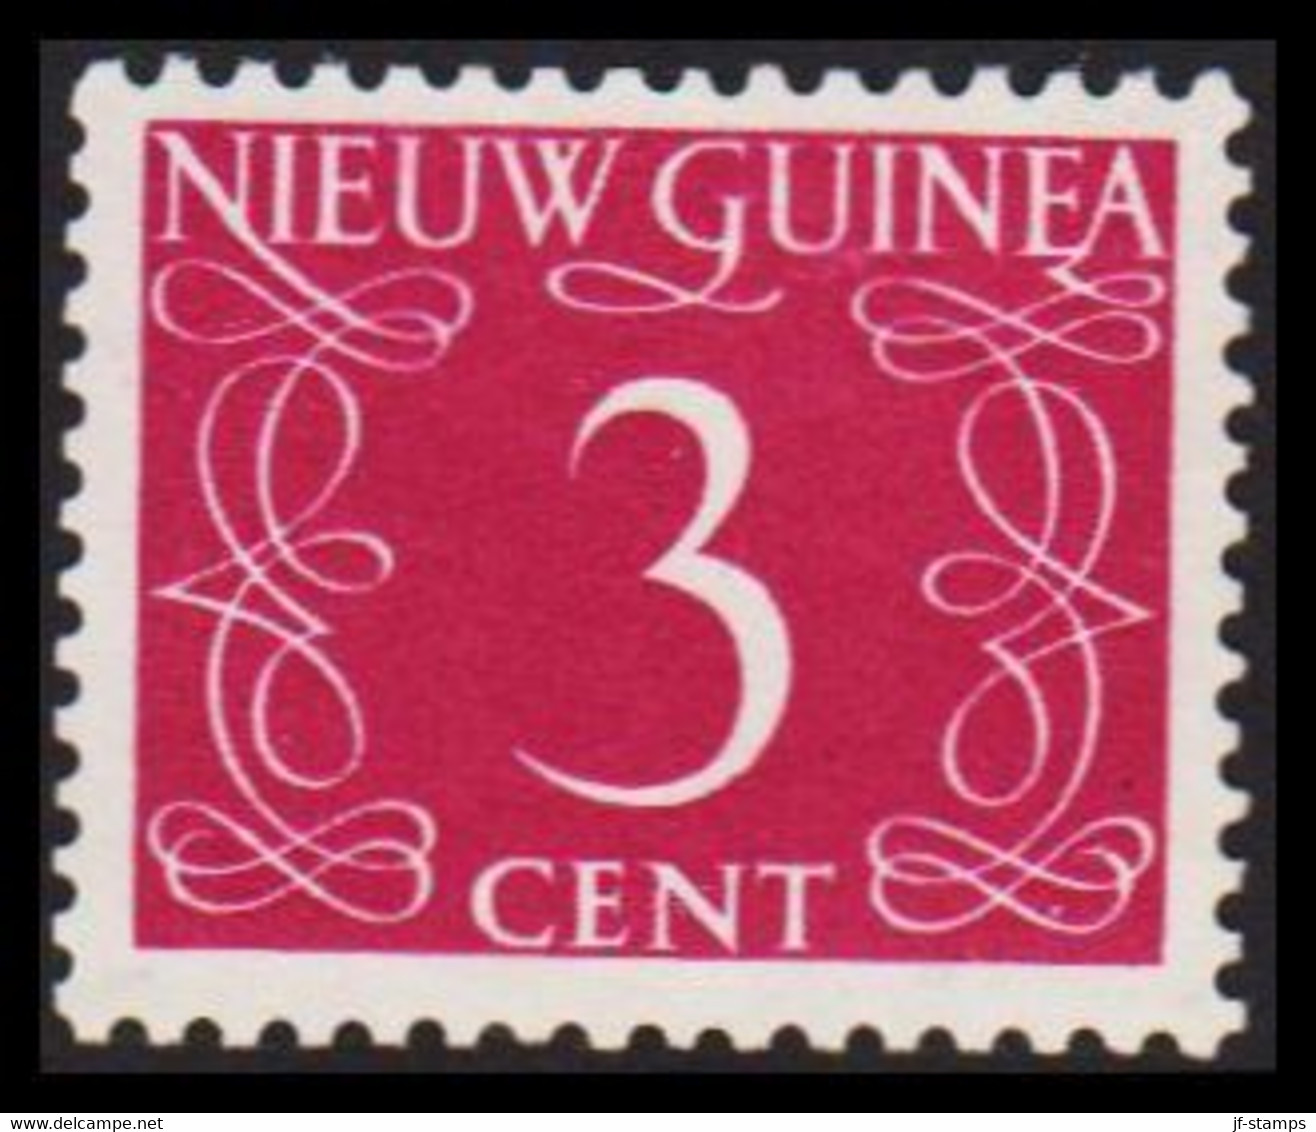 1950. NIEUW GUINEA. Nummerals- Type 3 CENT Hinged.  - JF529321 - Nederlands Nieuw-Guinea